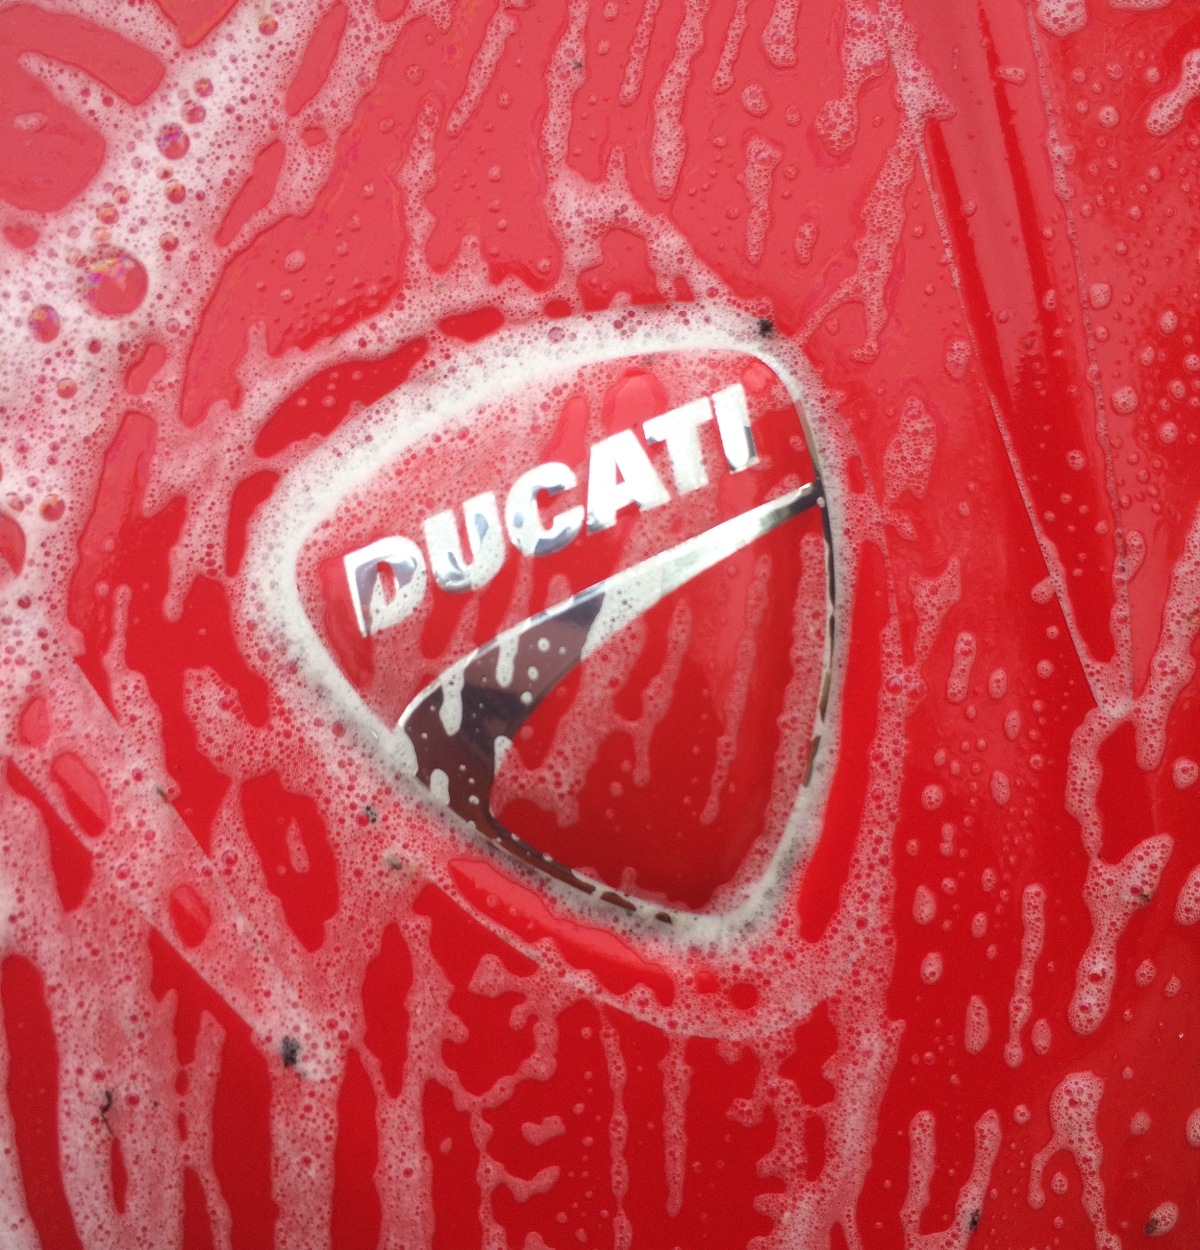 DUCATI, Design By Detail. Motorbike Detailing. Motorbike, detailing